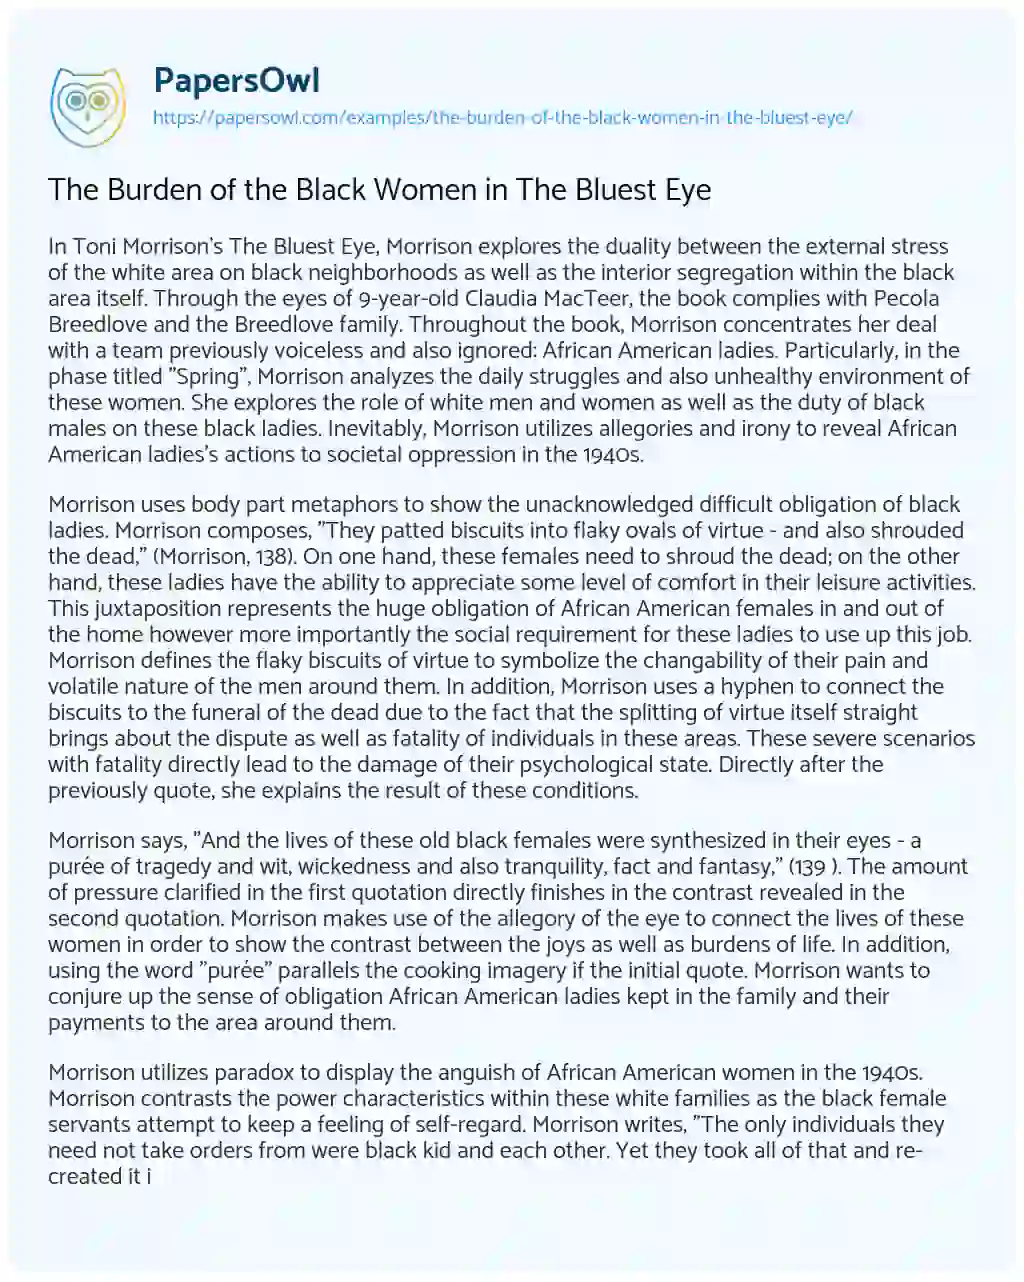 Essay on The Burden of the Black Women in the Bluest Eye